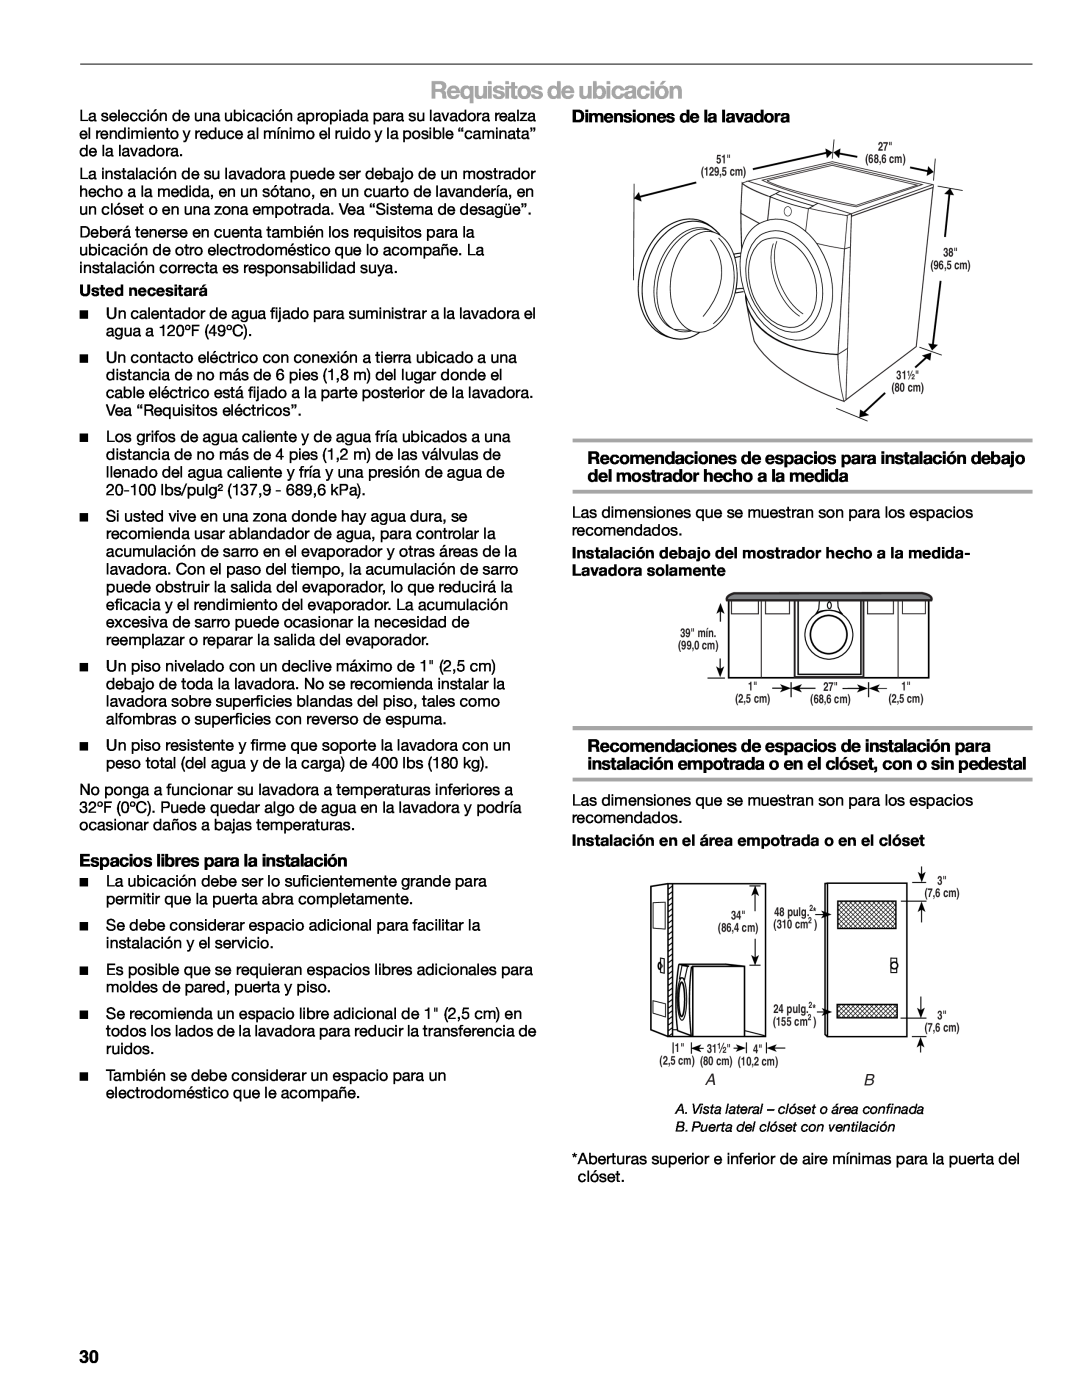 Sears 110.4779*, 110.4778* manual Requisitos de ubicación, Dimensiones de la lavadora, Espacios libres para la instalación 